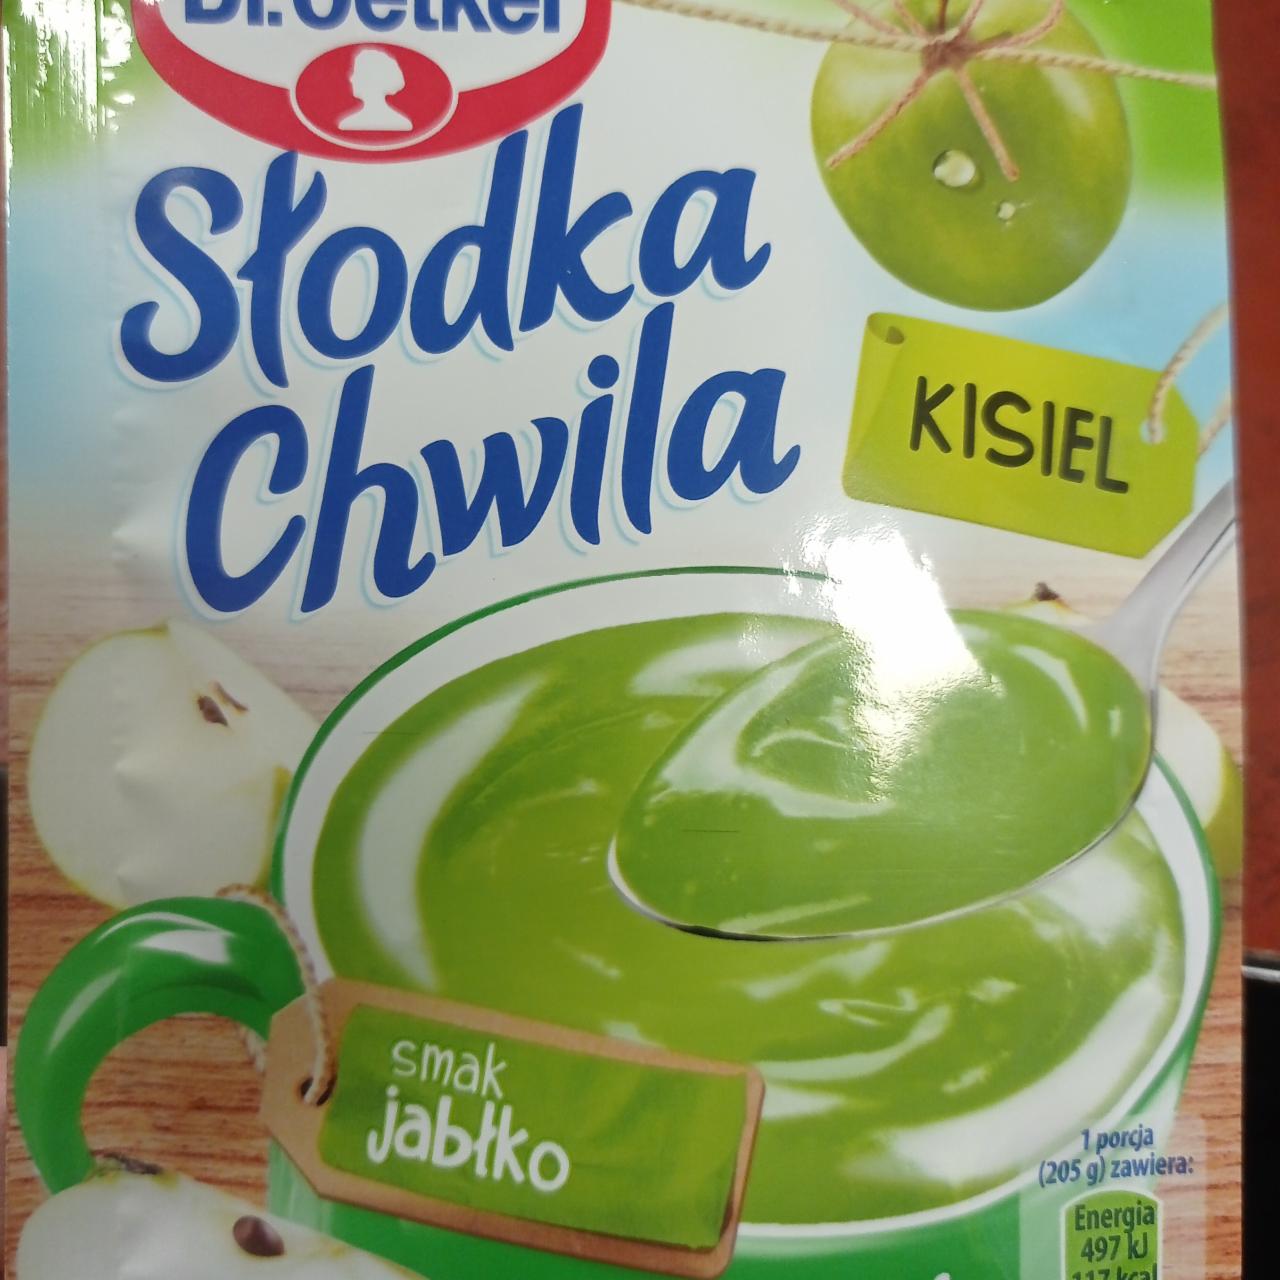 Fotografie - Škoda chwila kisiel smak jablko Dr.Oetker